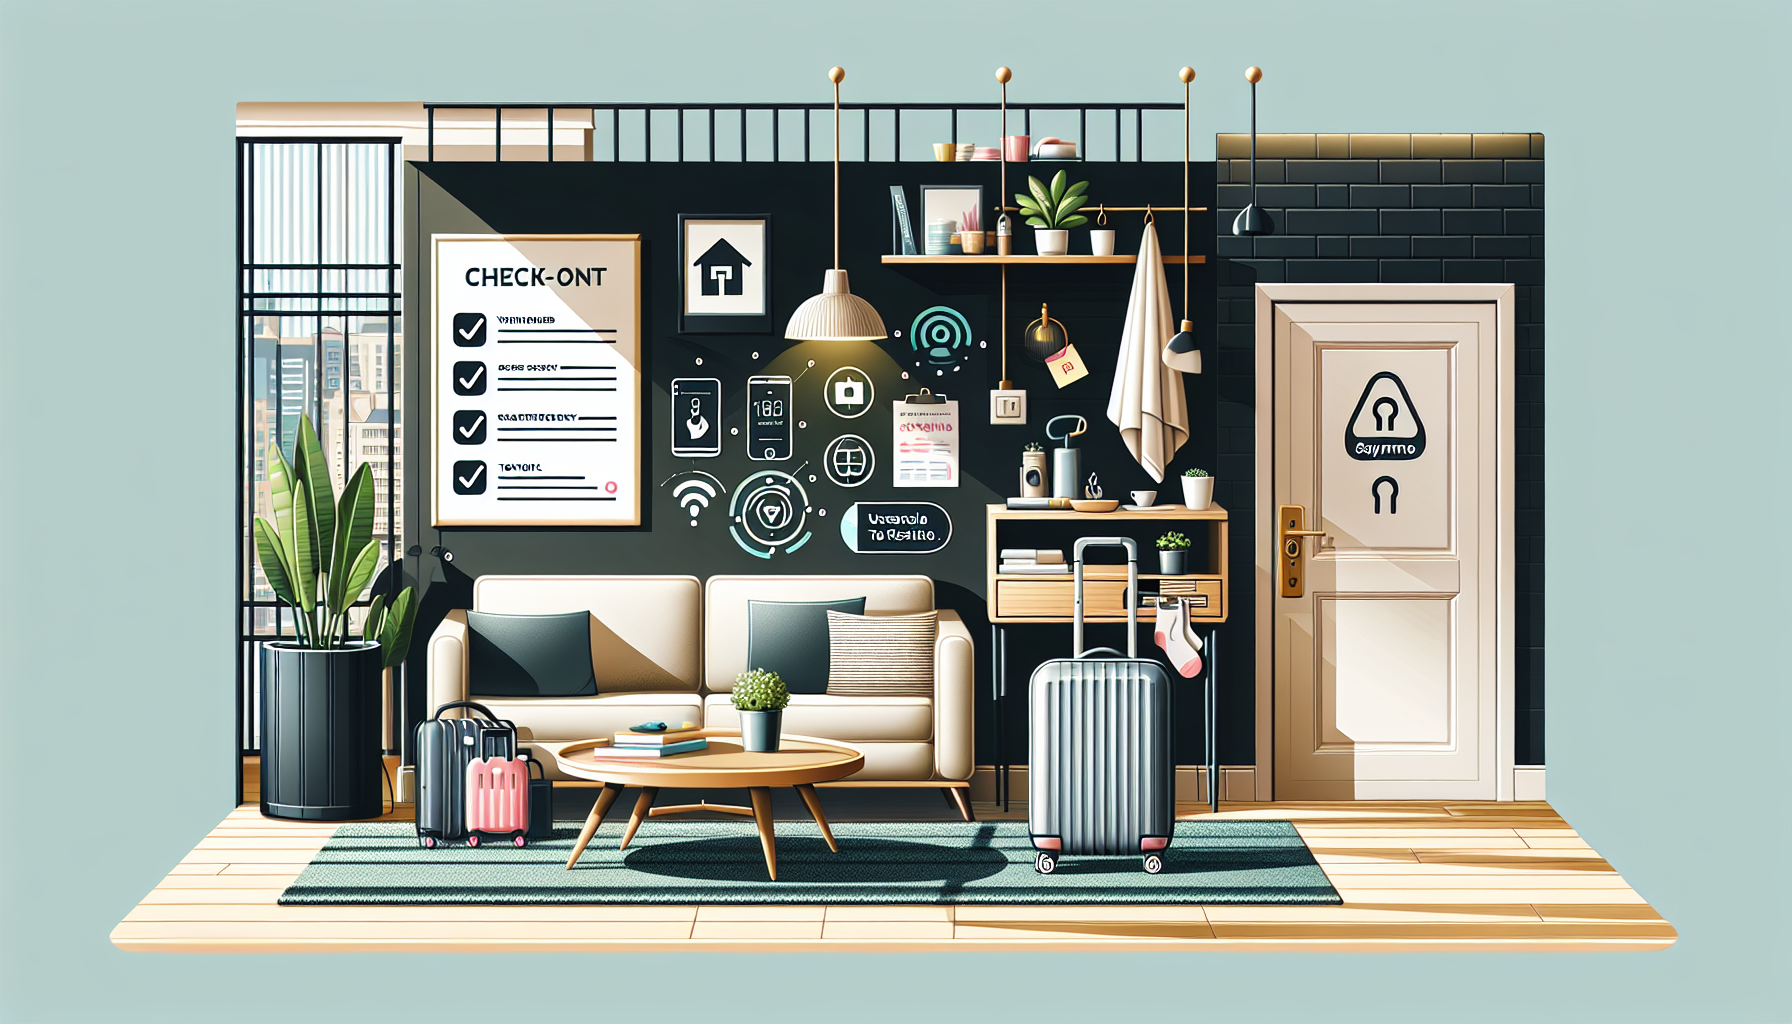 découvrez le processus de check-in et check-out pour les locations airbnb et apprenez comment cela fonctionne pour faciliter votre séjour.